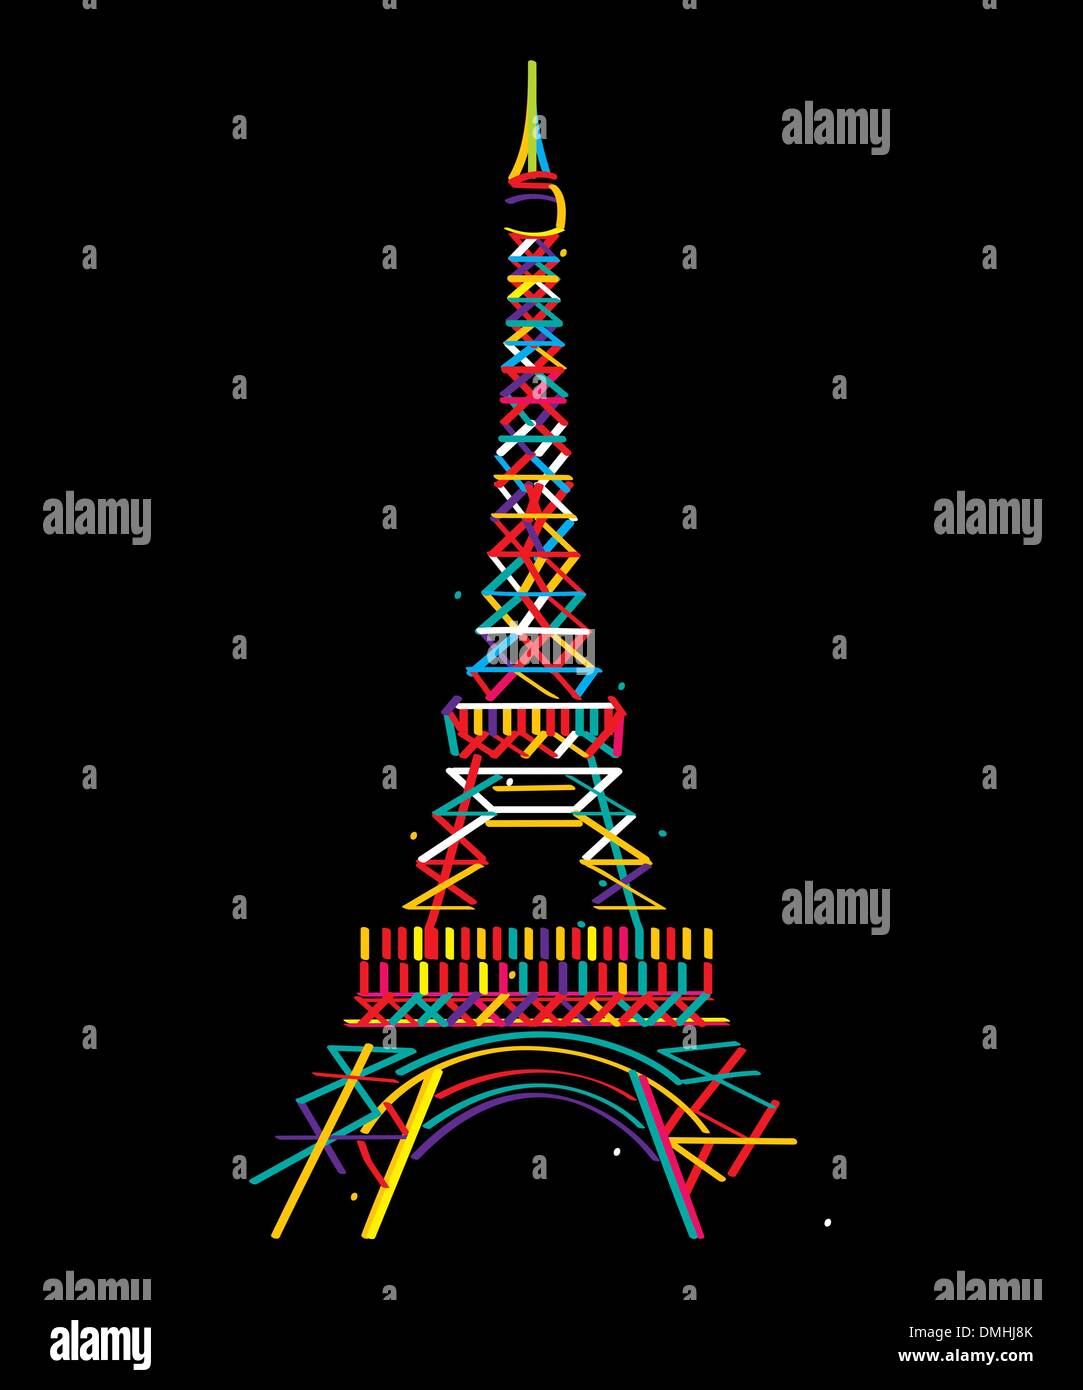 Tour Eiffel Illustration de Vecteur